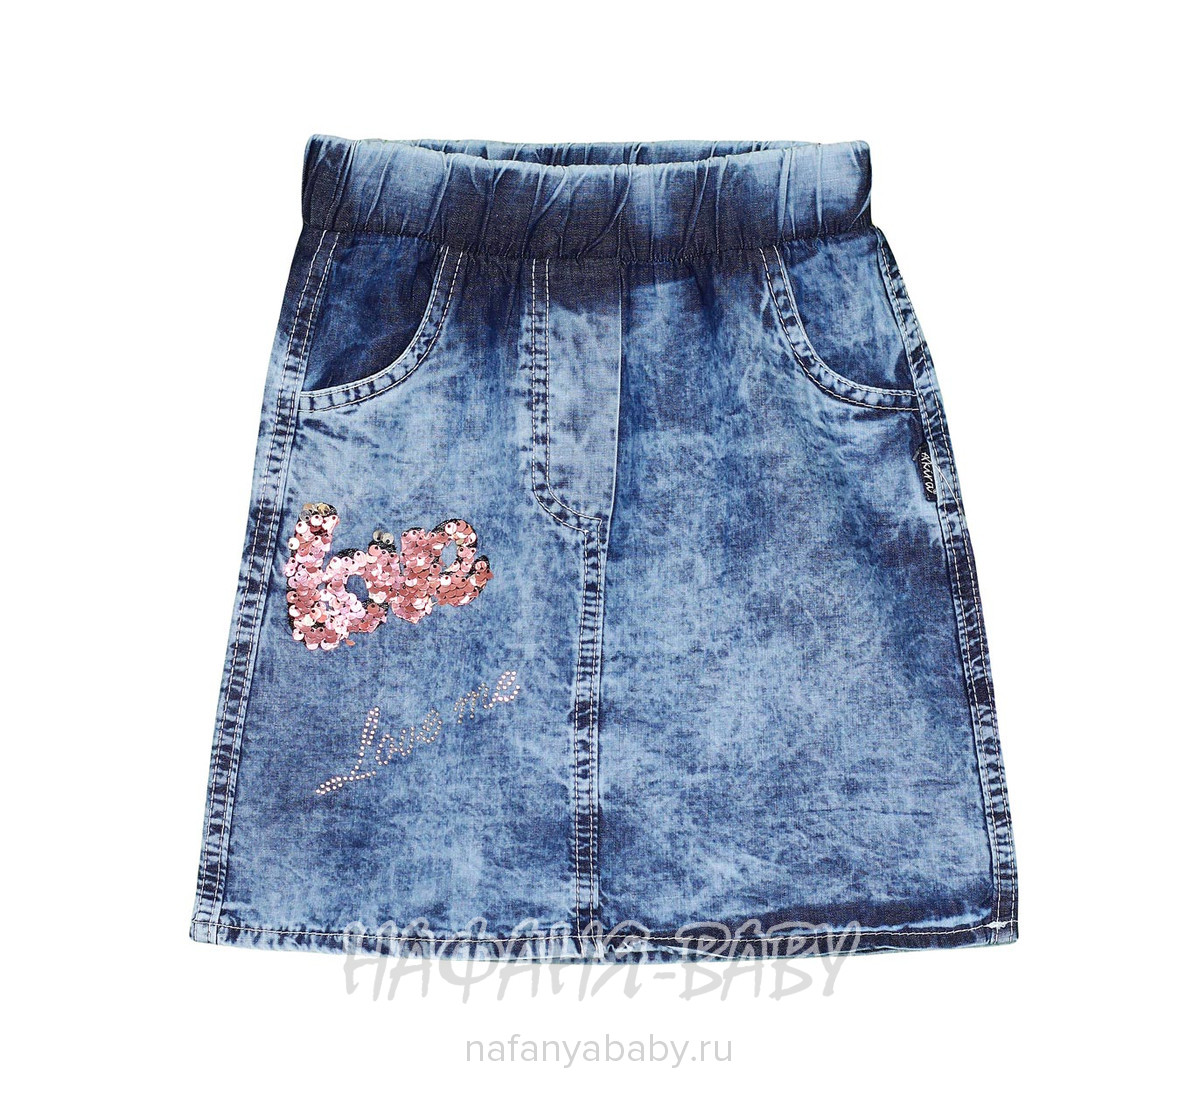 Детская джинсовая юбка AKIRA, купить в интернет магазине Нафаня. арт: 2631.